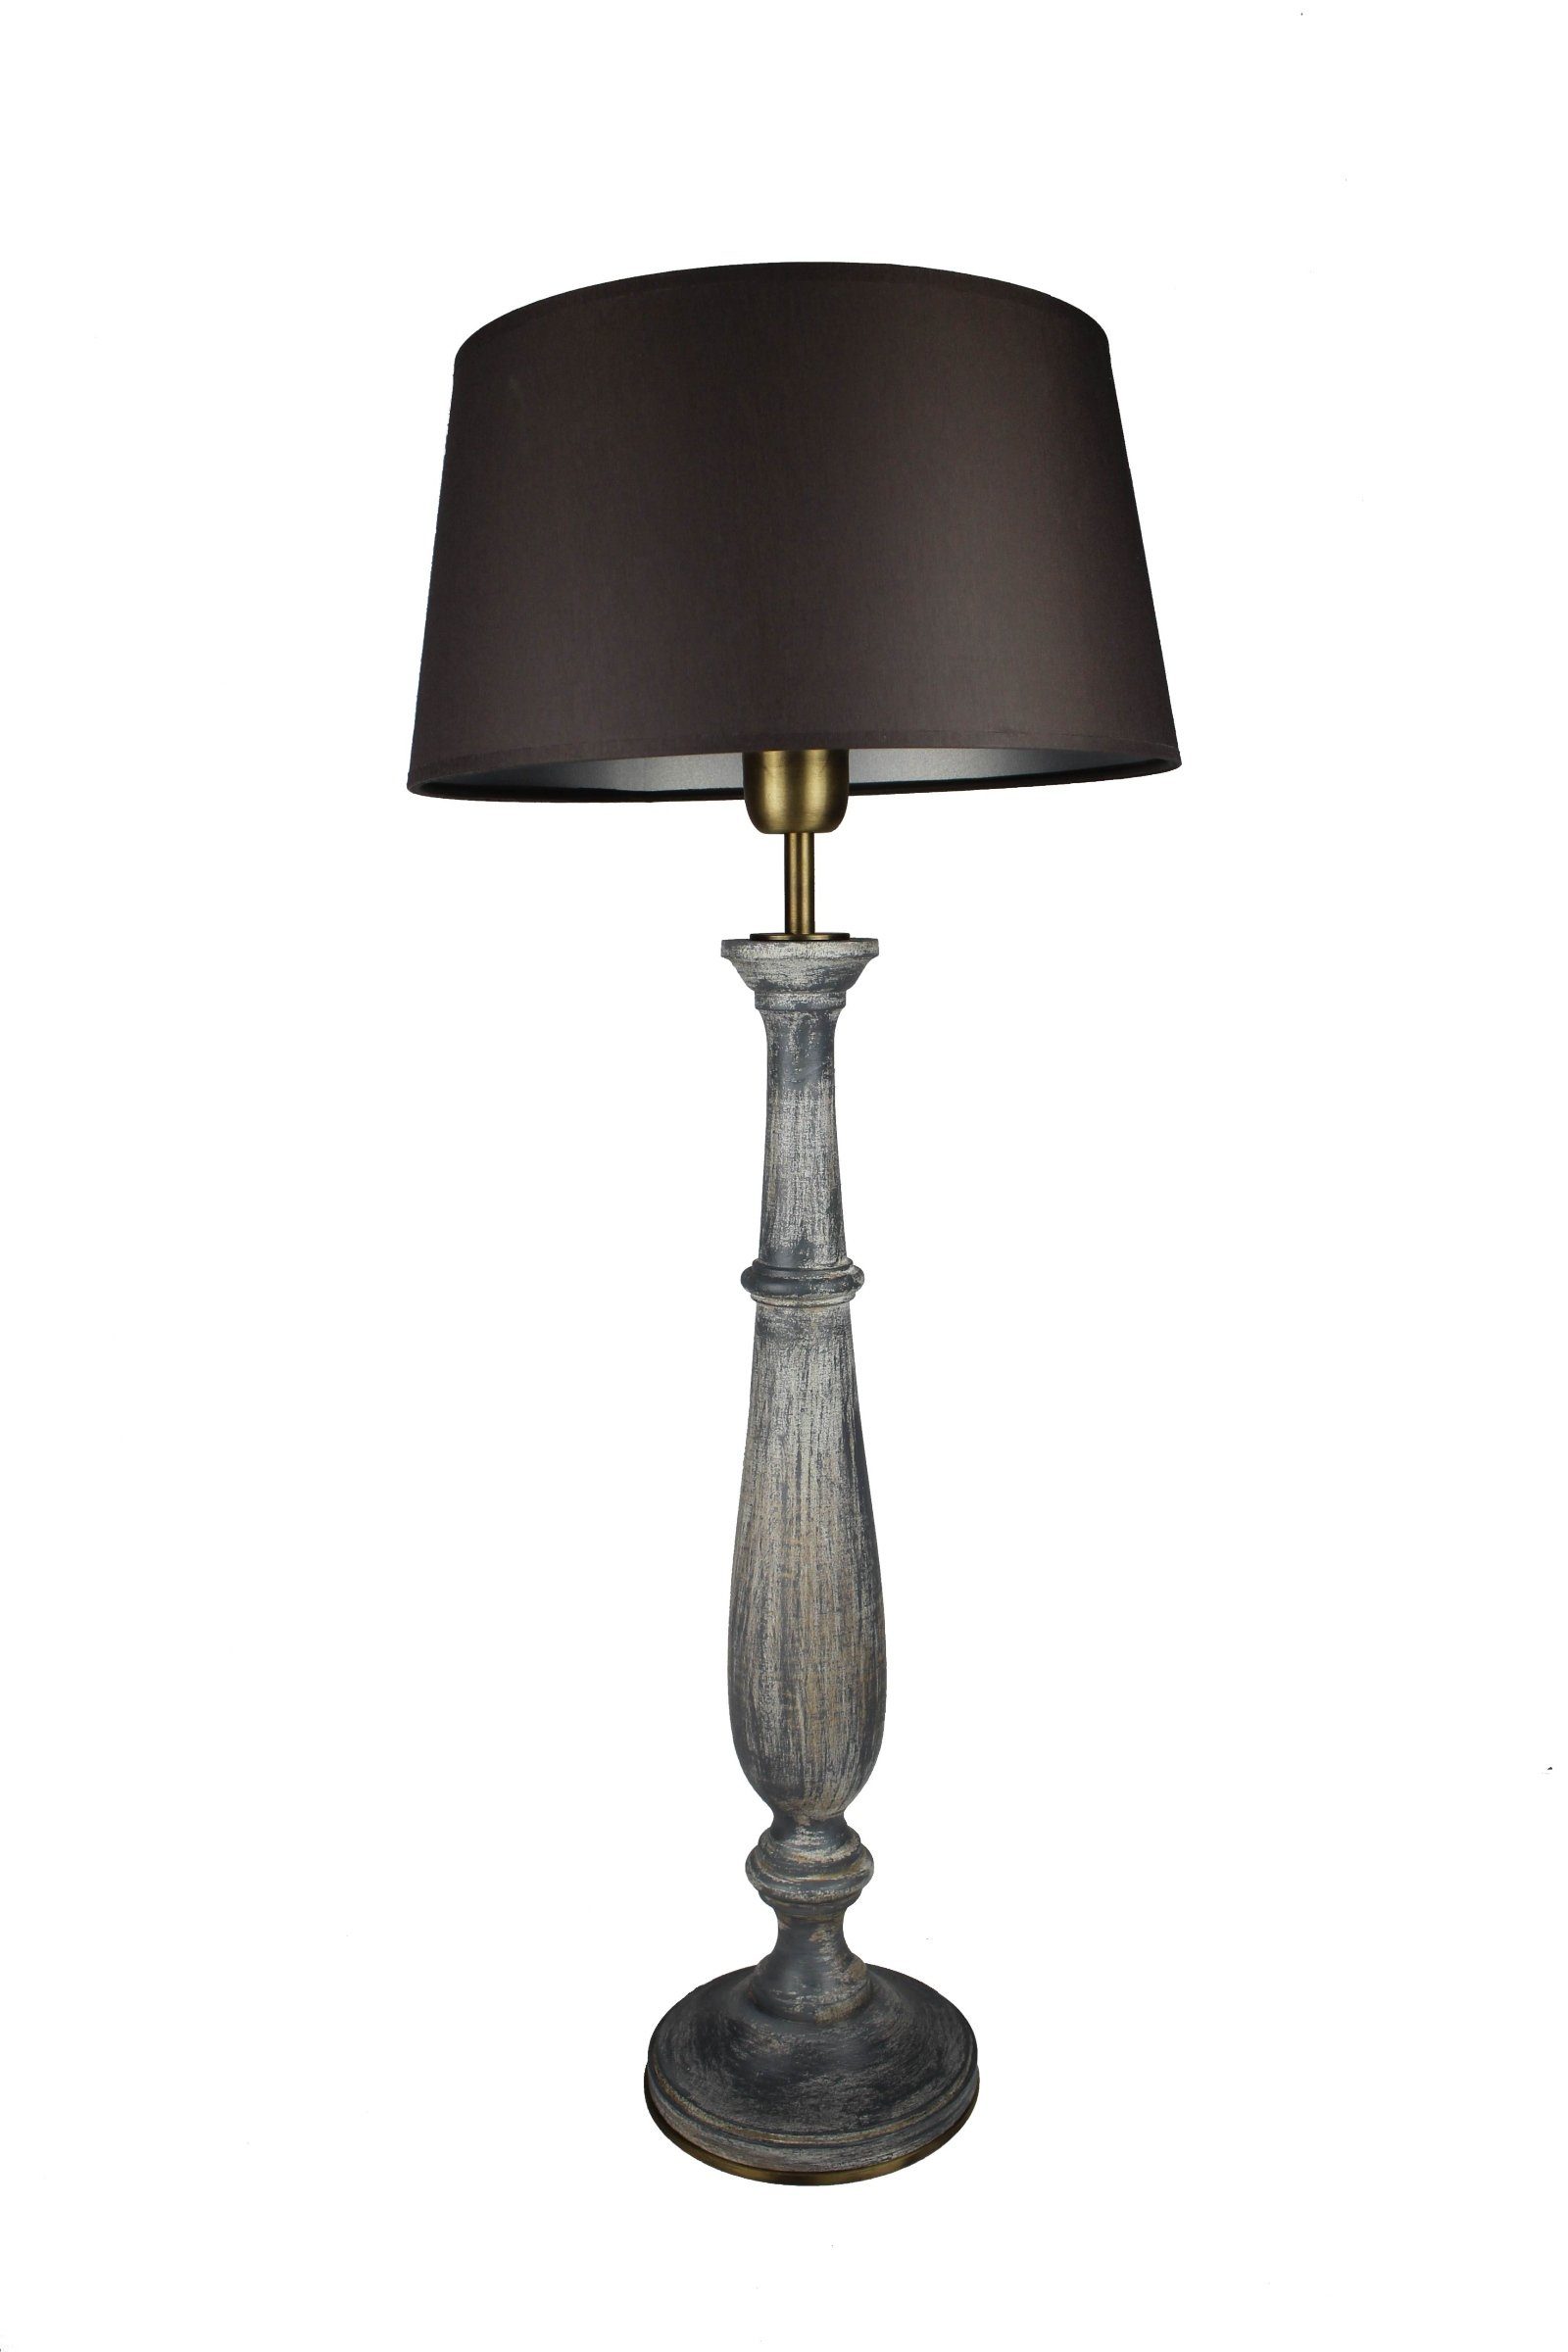 Signature Home Collection Schreibtischlampe Schirm handgefertigte warmweiß, Holz Leuchtmittel, Leuchte schwarz, grau Italien gedrechselt Tischlampe aus mit ohne